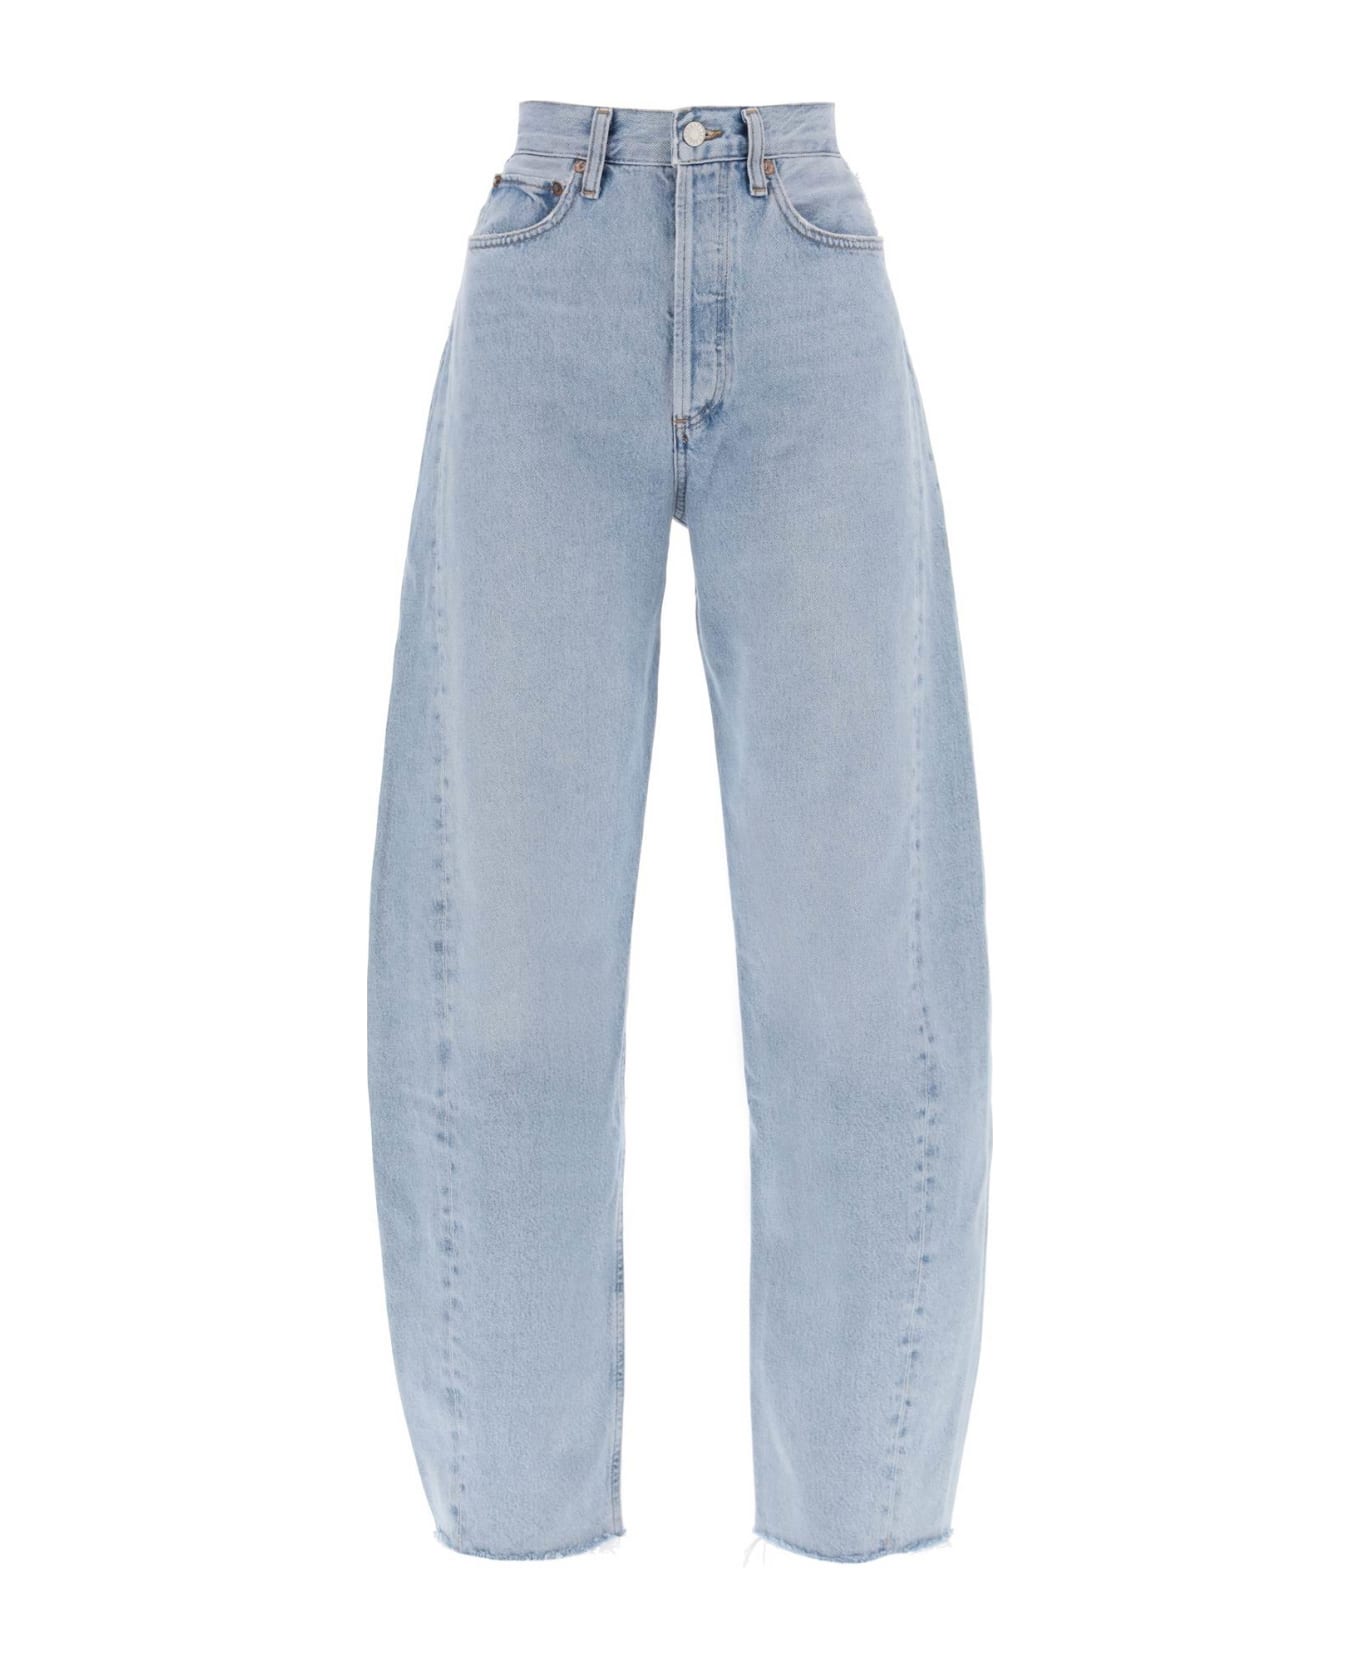 AGOLDE Luna Curved Leg Jeans - VOID (Light blue)